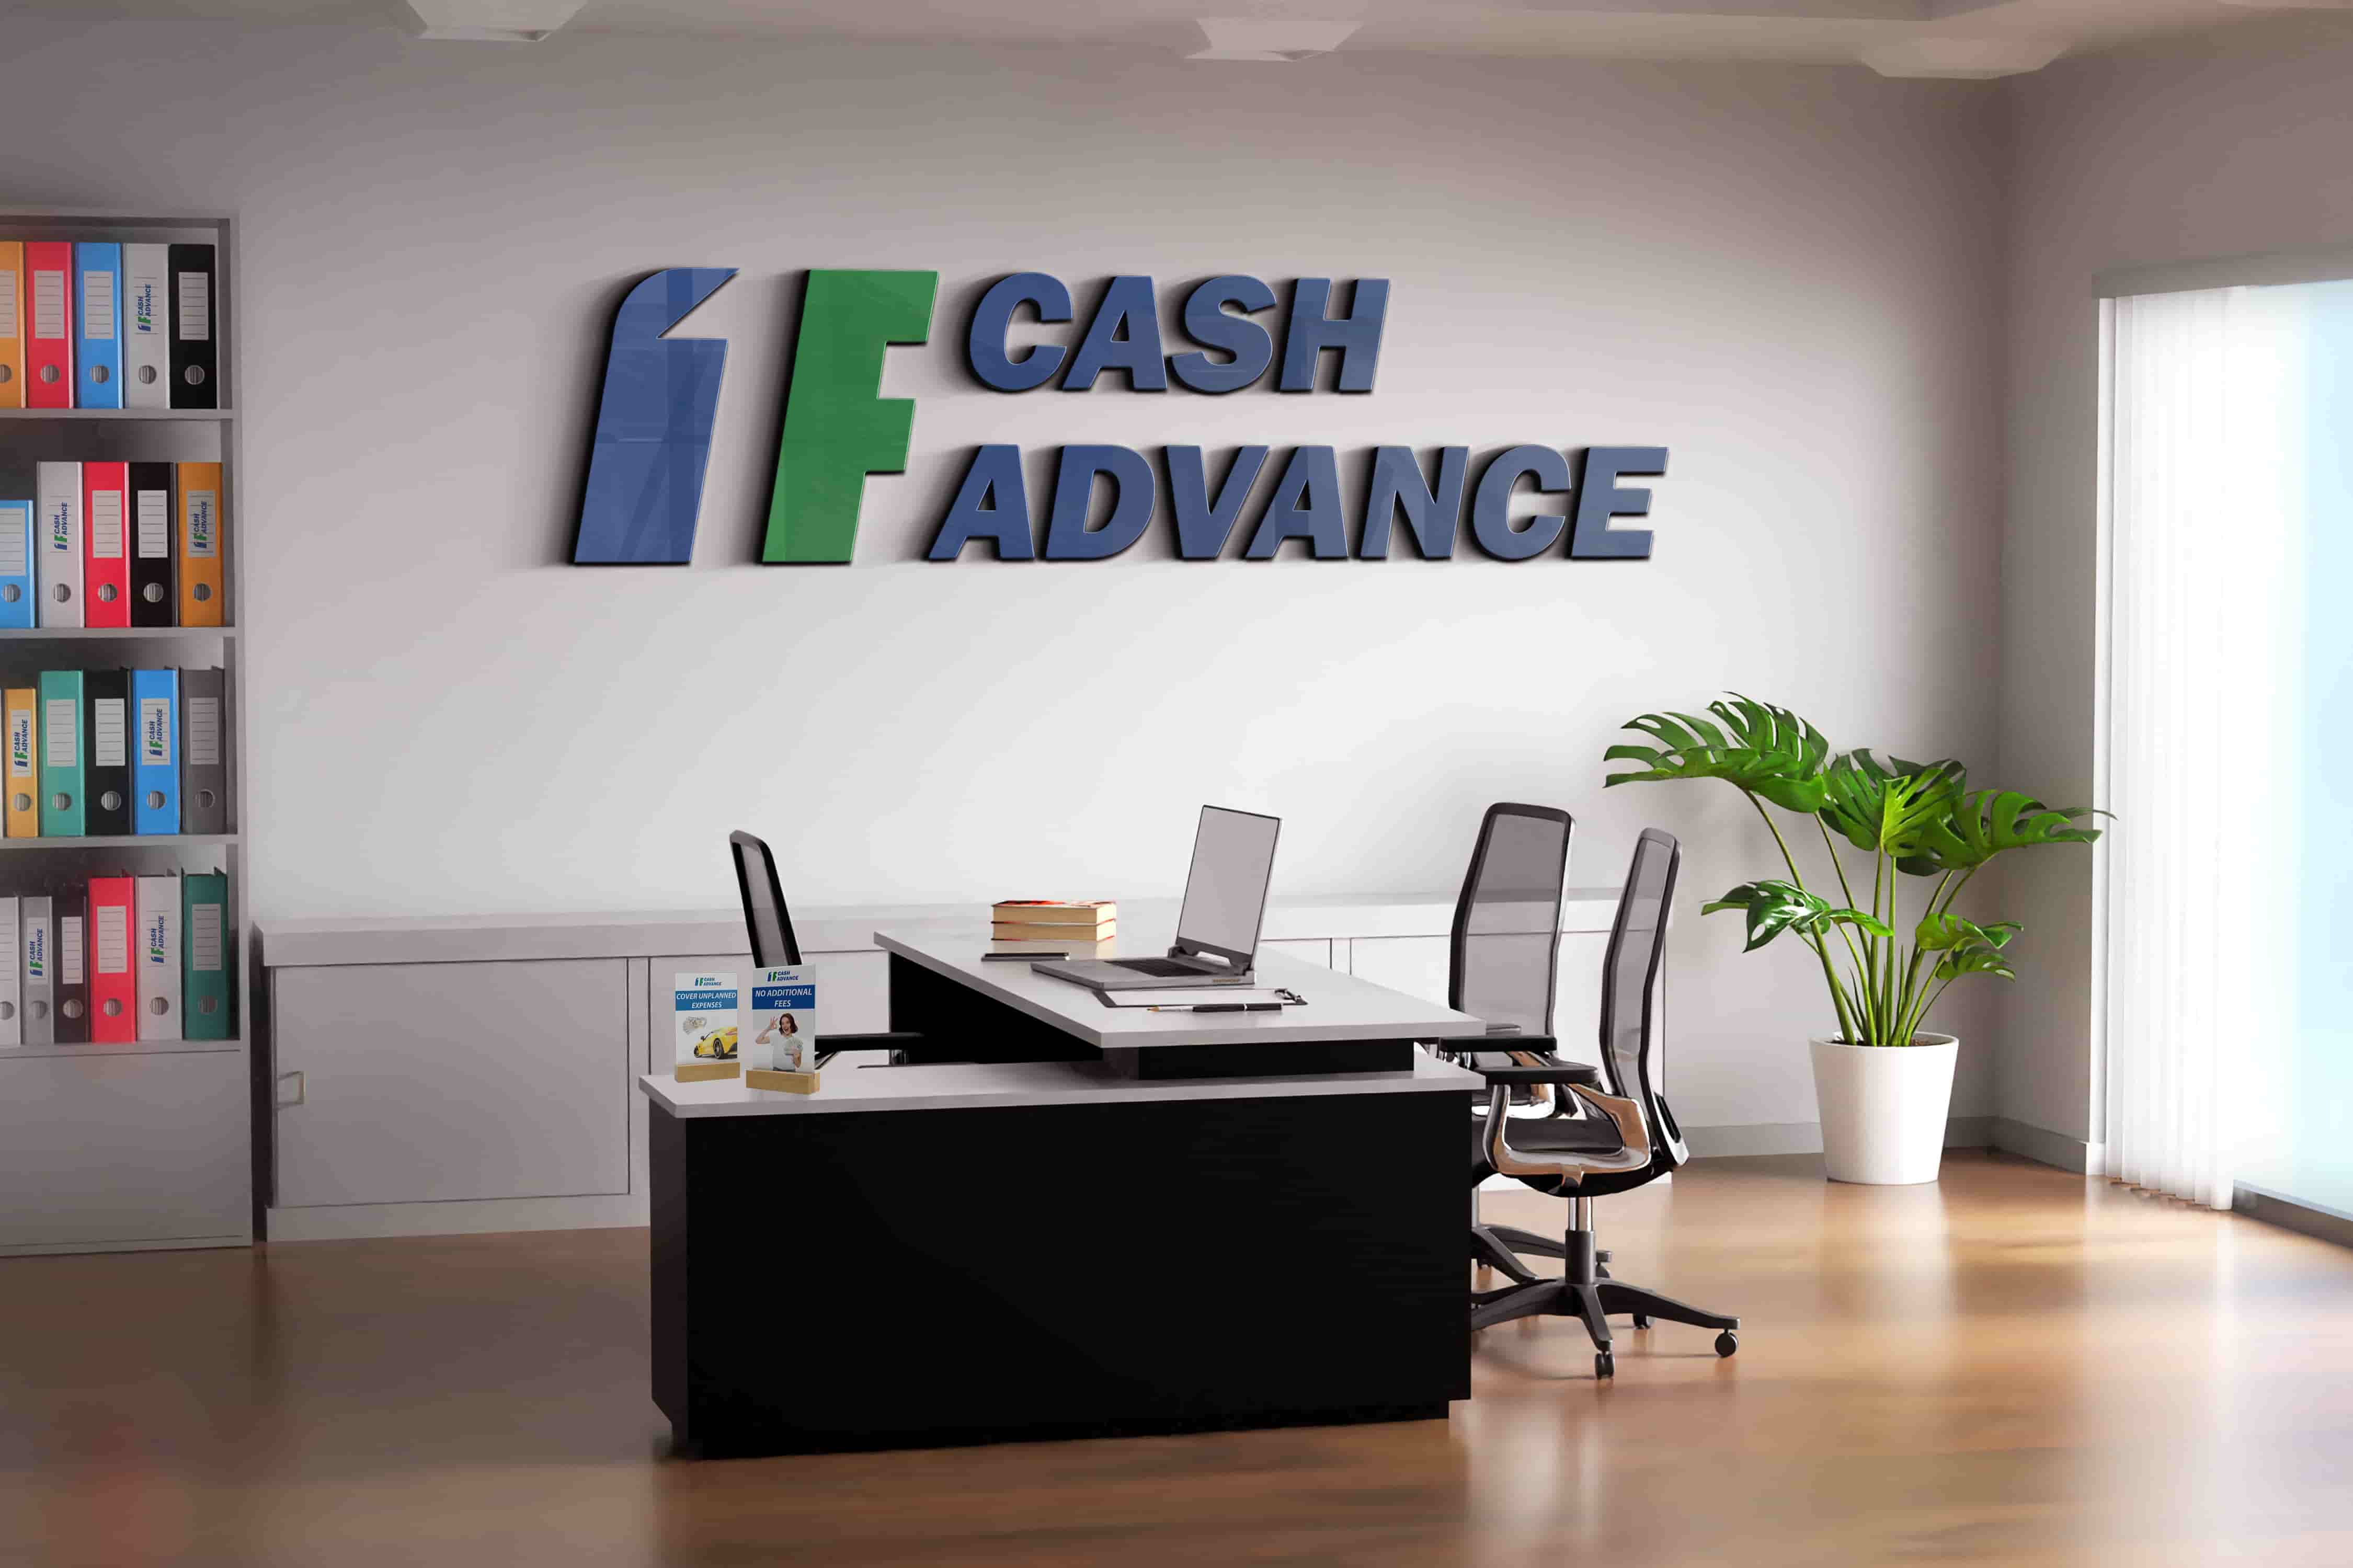 Cash advance loans in Cincinnati, OH